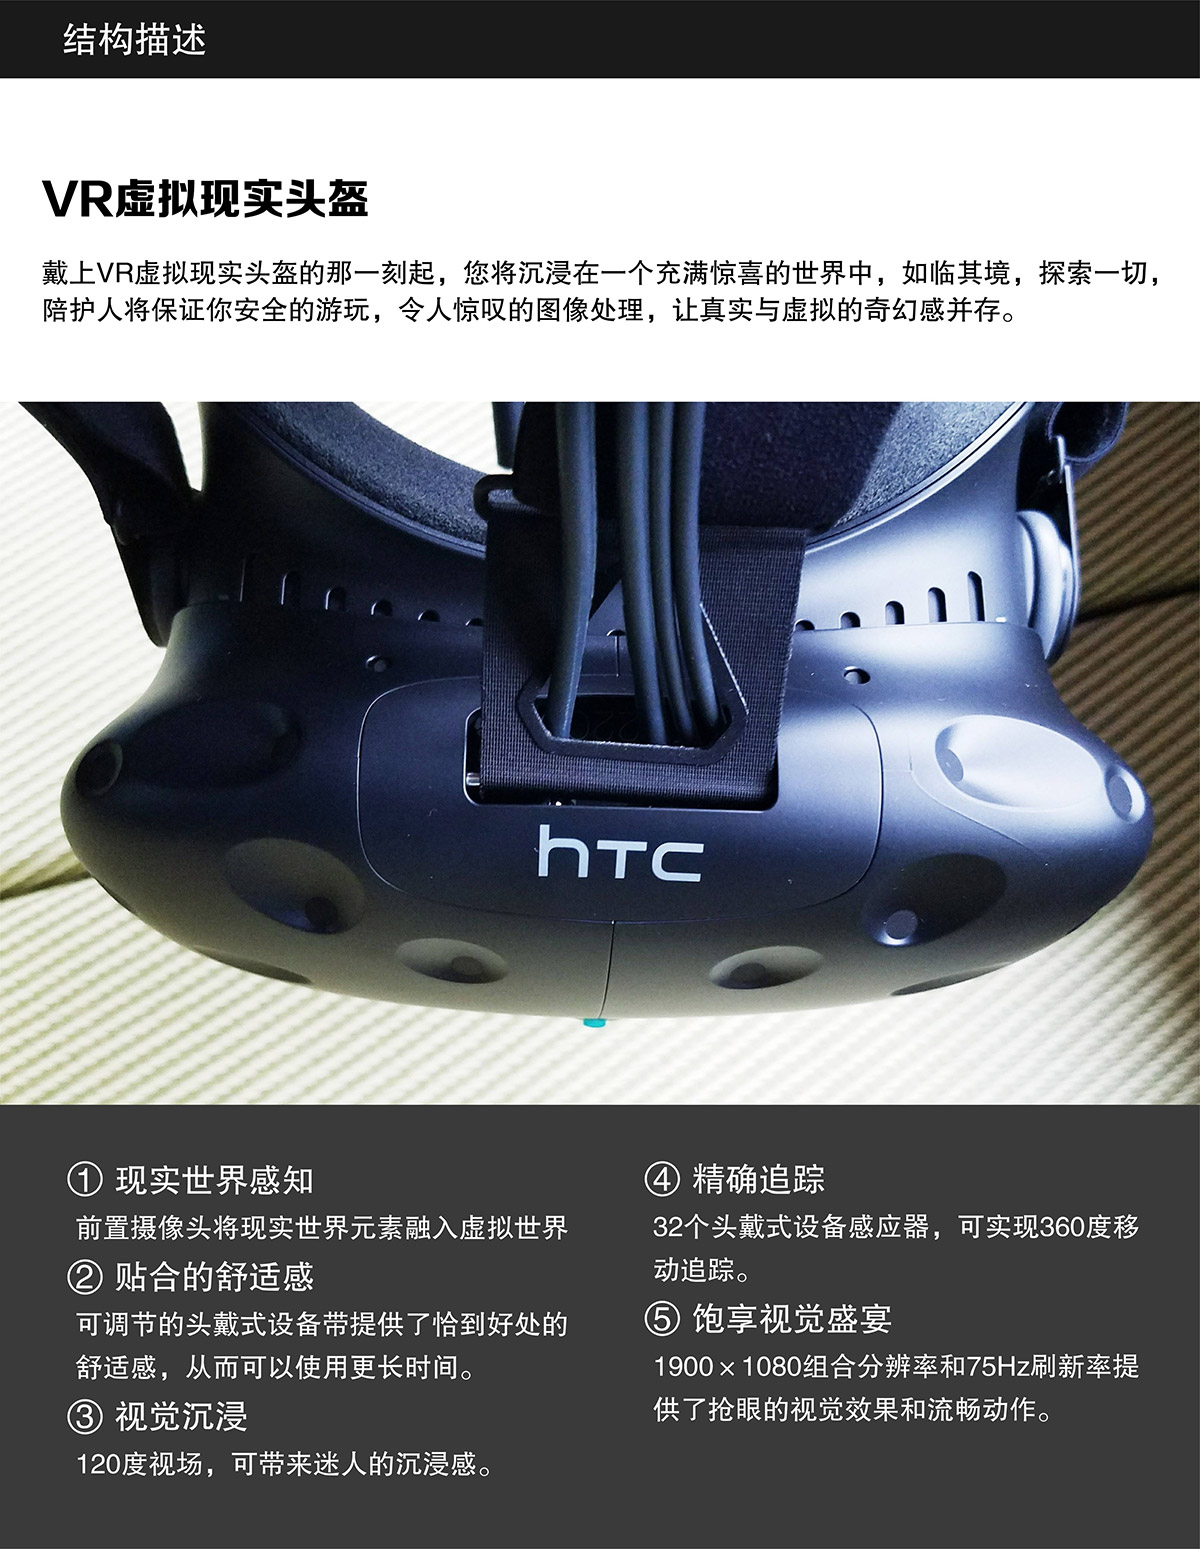 VR台风坦克大战虚拟现实头盔结构描述.jpg